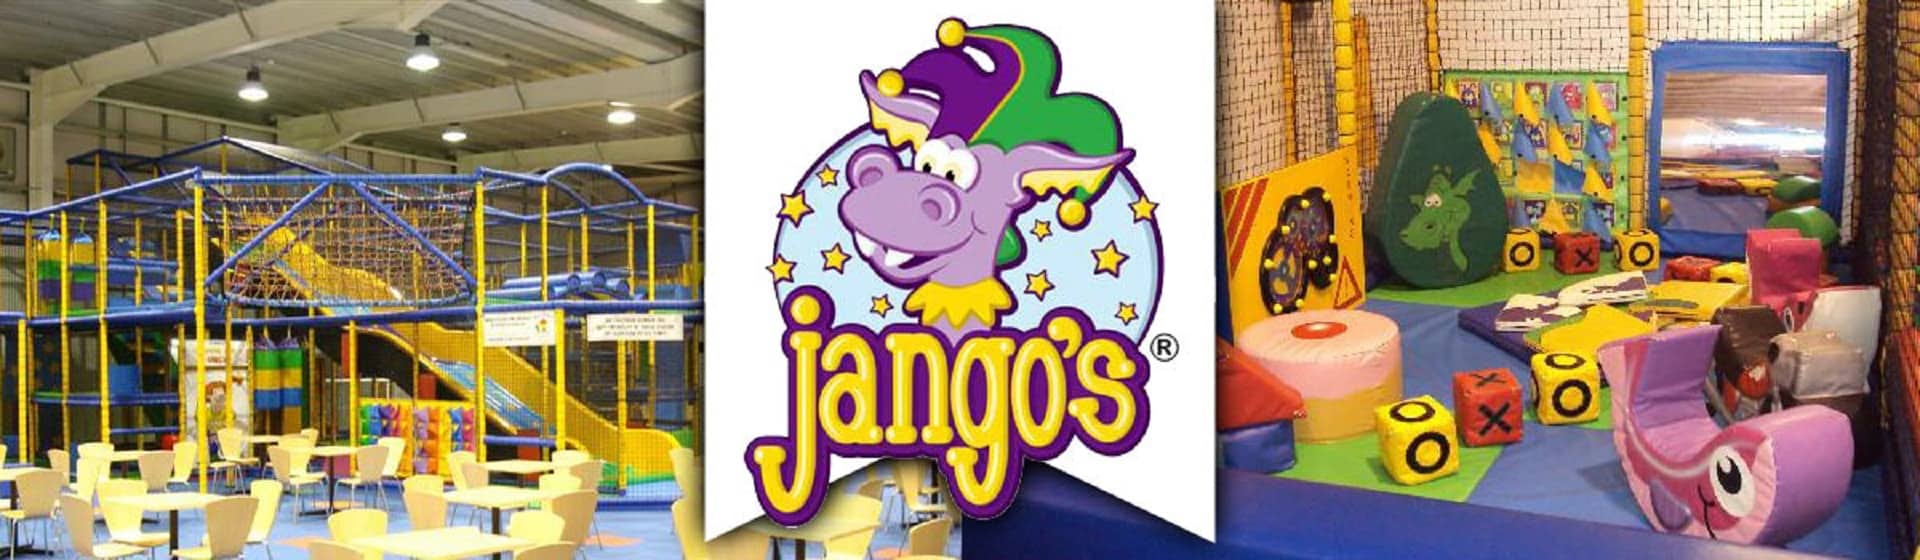 Jango's Indoor Play Centre in UK